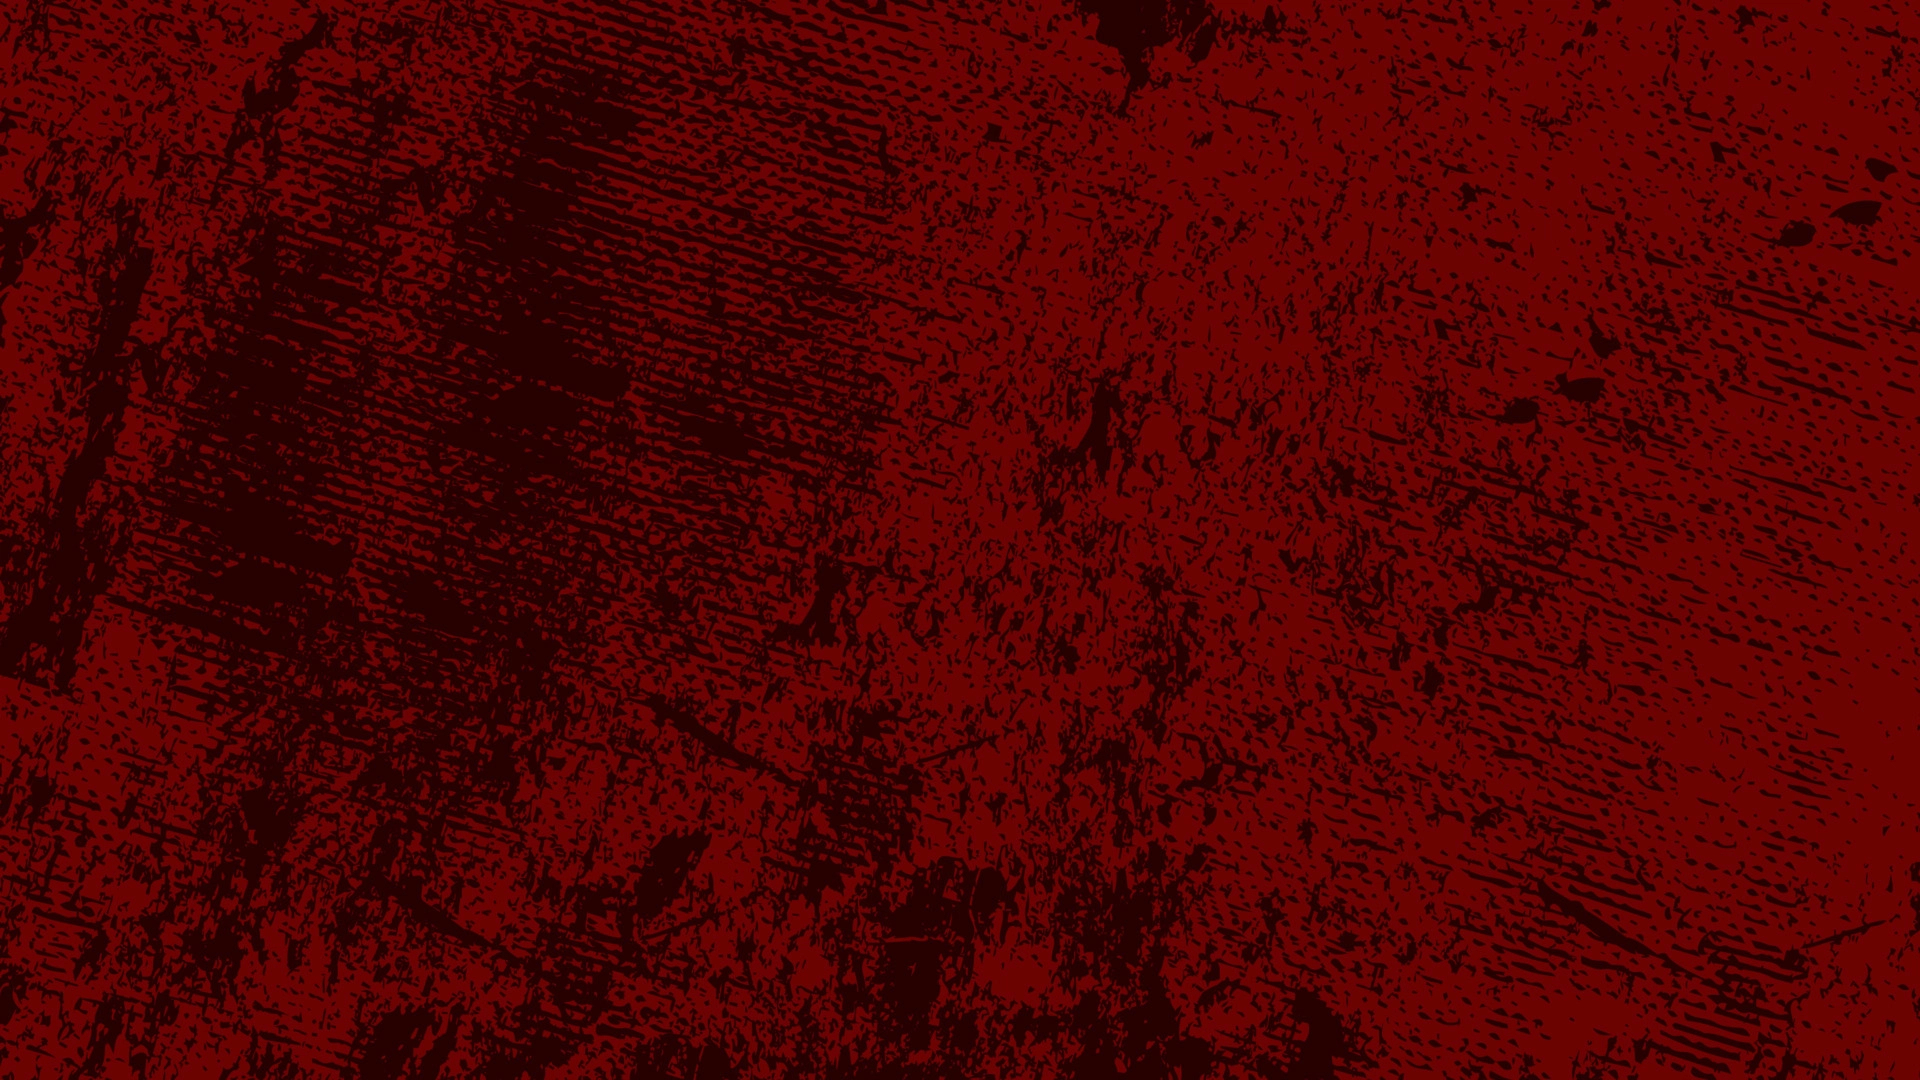 1920x1080 red grunge background with ink splash effect, splash banner concept 5182860 Vector Art